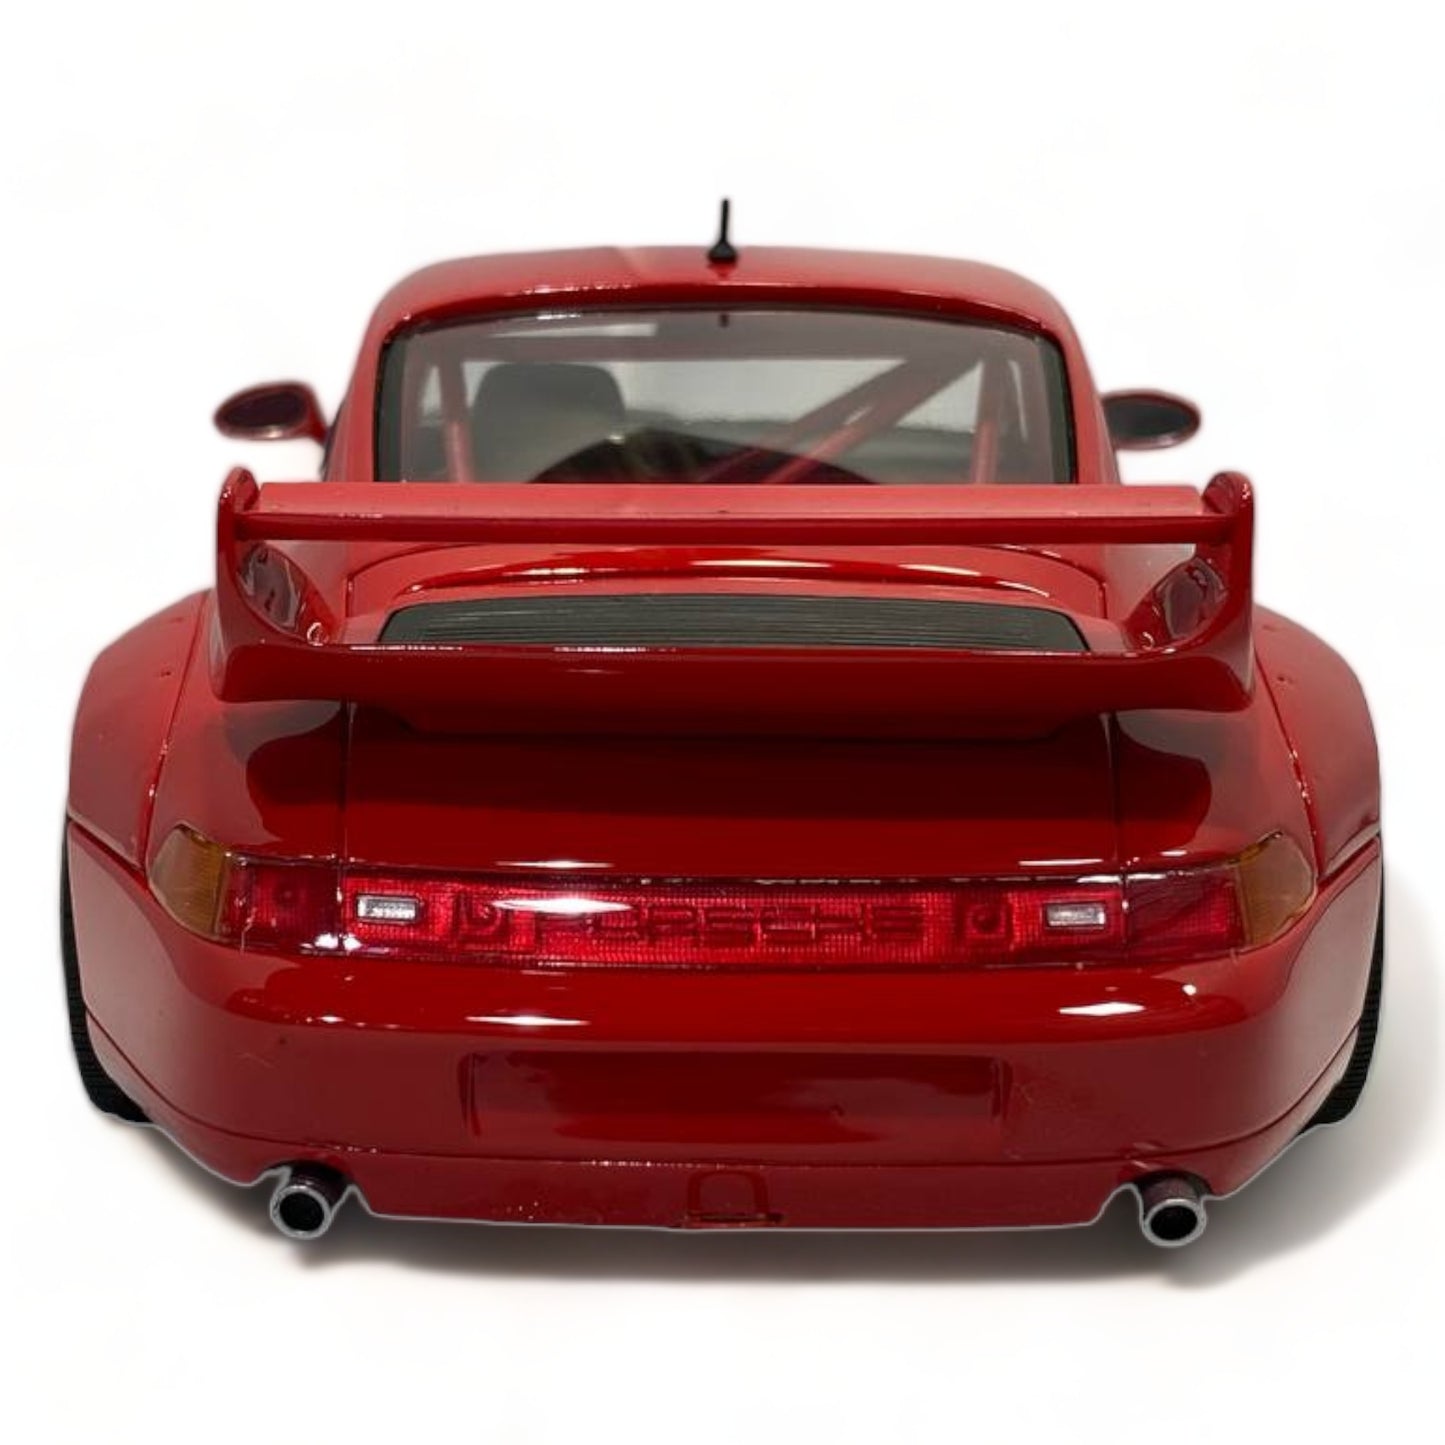 1/18 Diecast GT Spirit Porsche 911 RSR 964 in Red Scale Model Car